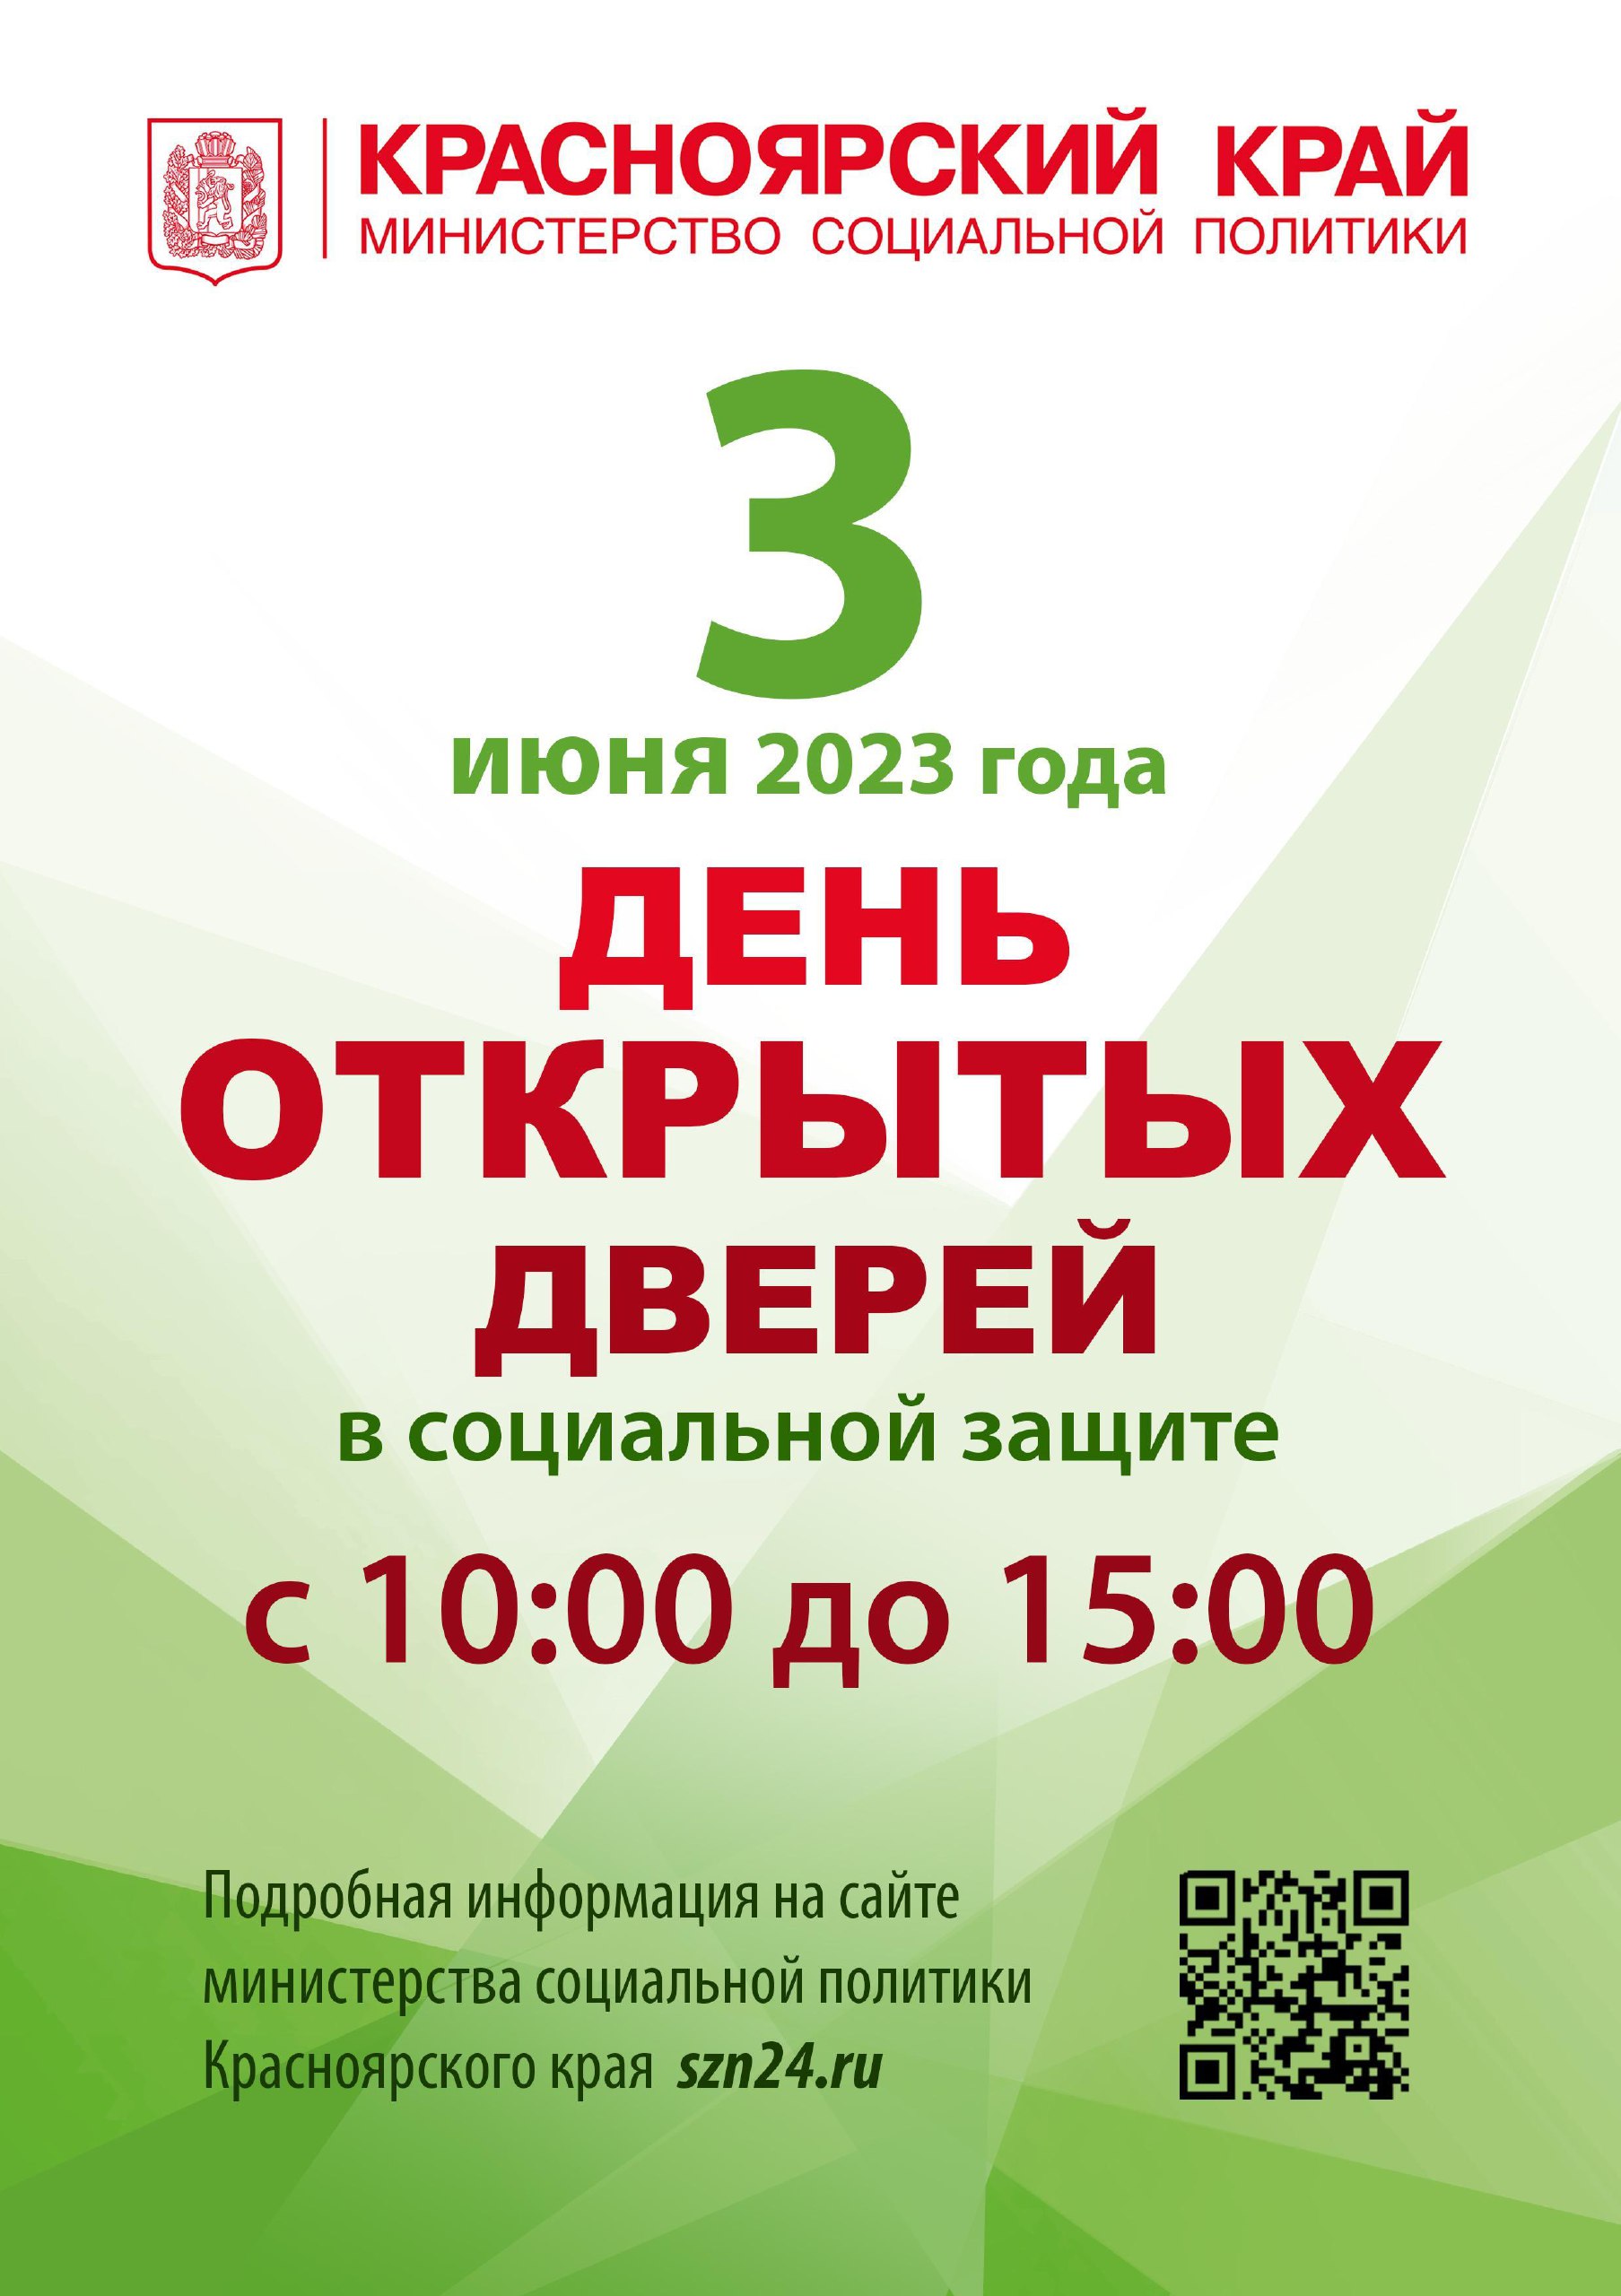 Уважаемые жители Богучанского района! 3 июня 2023 с 10.00 до 15.00 по адресу: с.Богучаны, ул.Ленина, д.13 состоится «День открытых дверей».